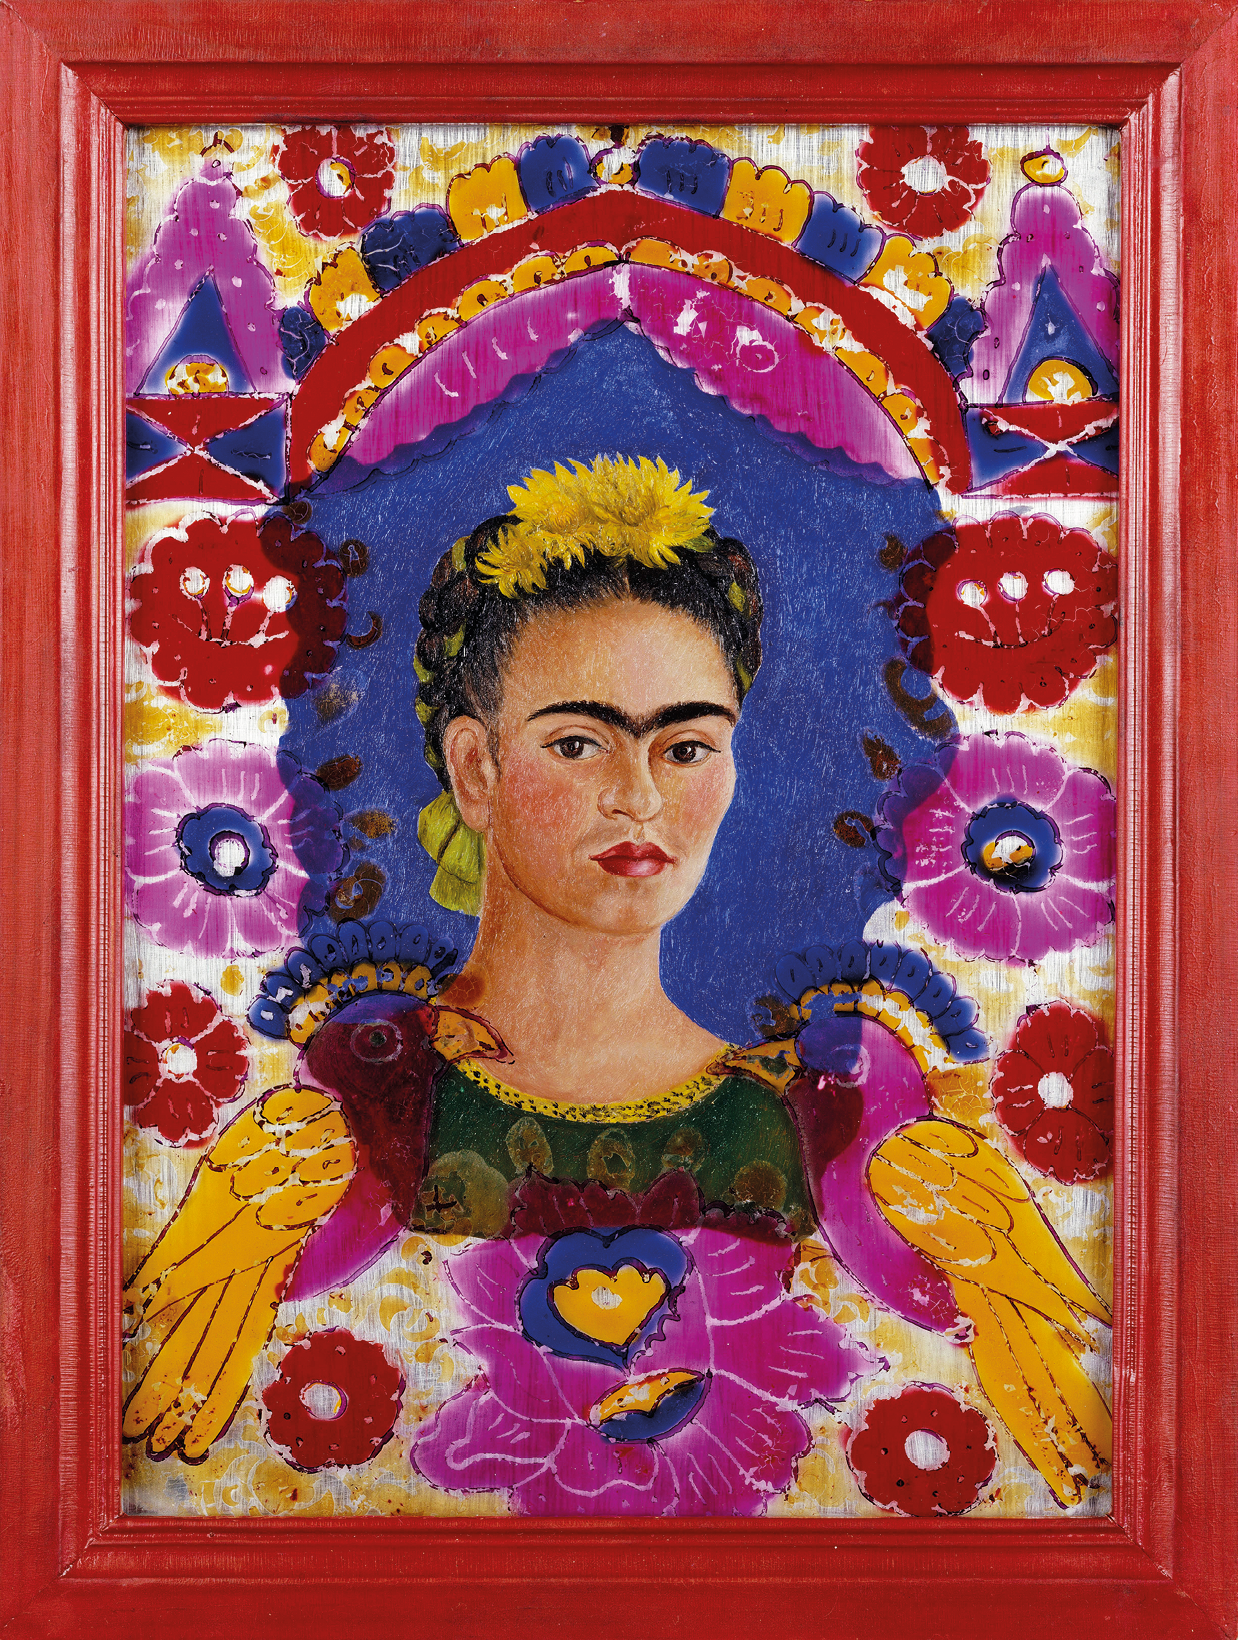 Pintura. Autorretrato de Frida Kahlo. No centro de uma moldura vermelha, destaque para o busto de mulher de cabelo preto penteado para trás com um enfeite amarelo em cima. Ela tem monocelha grossa, lábios vermelhos. Usa blusa verde em detalhes brancos e é vista de frente. Ao redor, há flores lilases, vermelhas e asas amarelas.